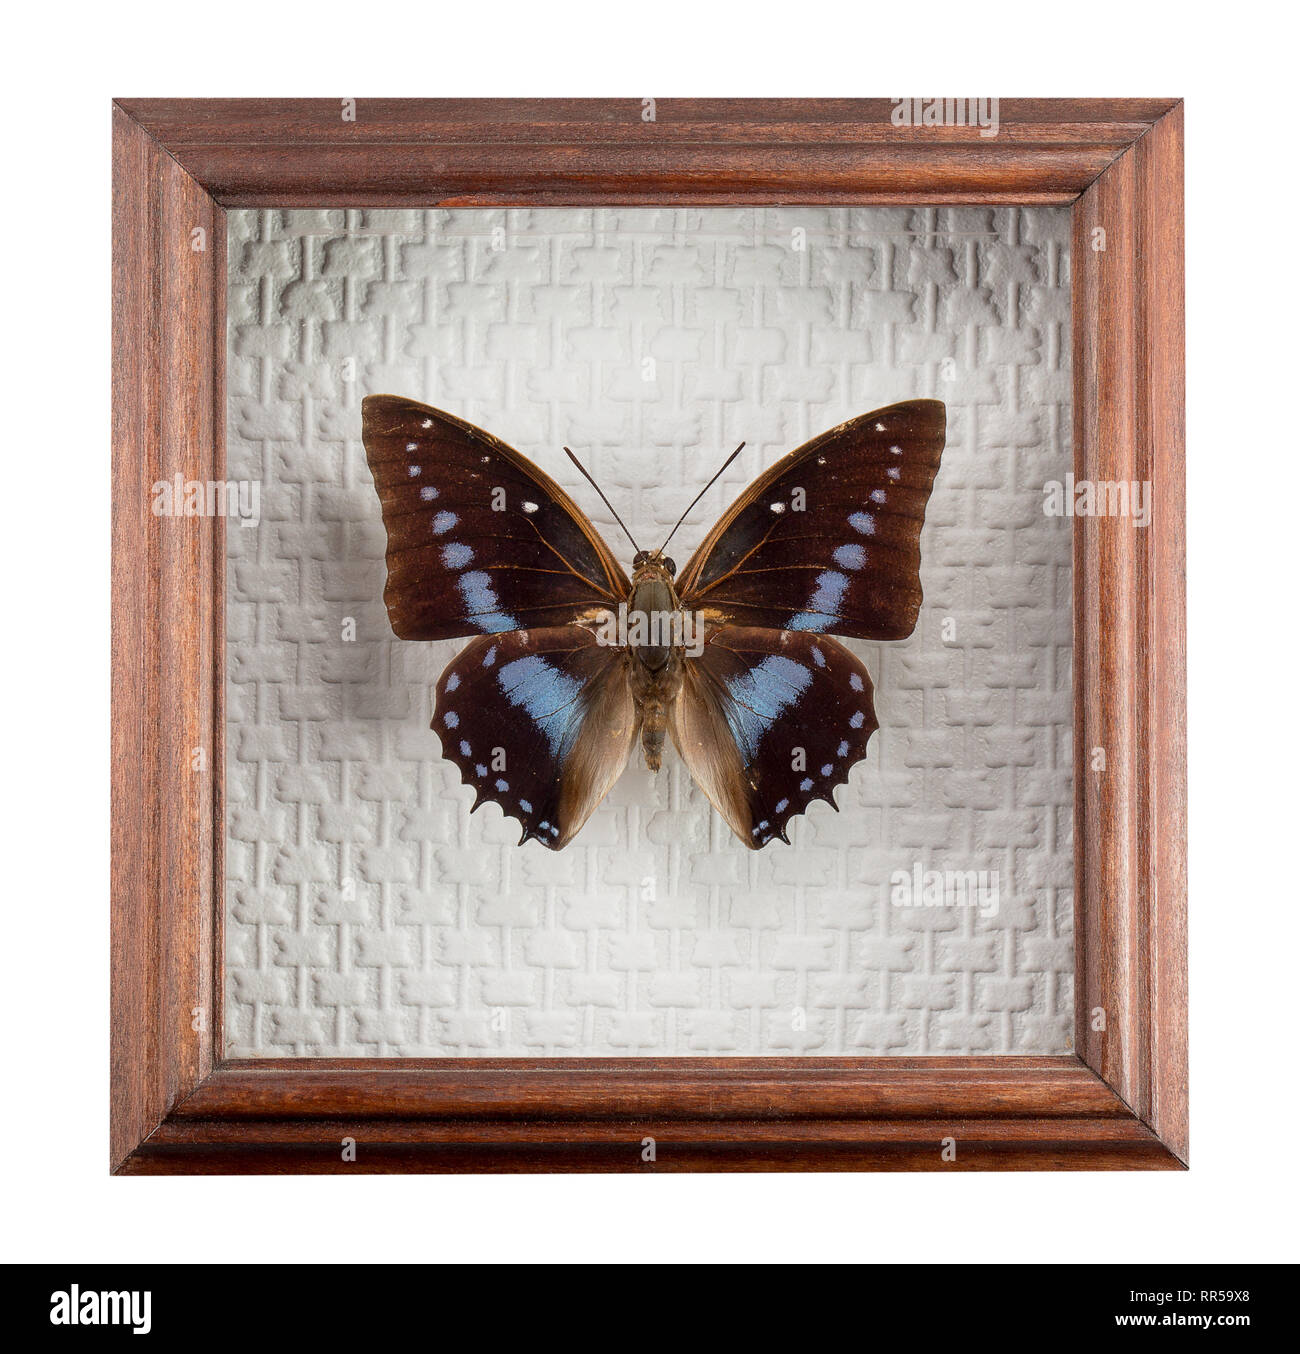 Schmetterling Charaxes imperialis im Rahmen auf weißem Hintergrund. Stockfoto